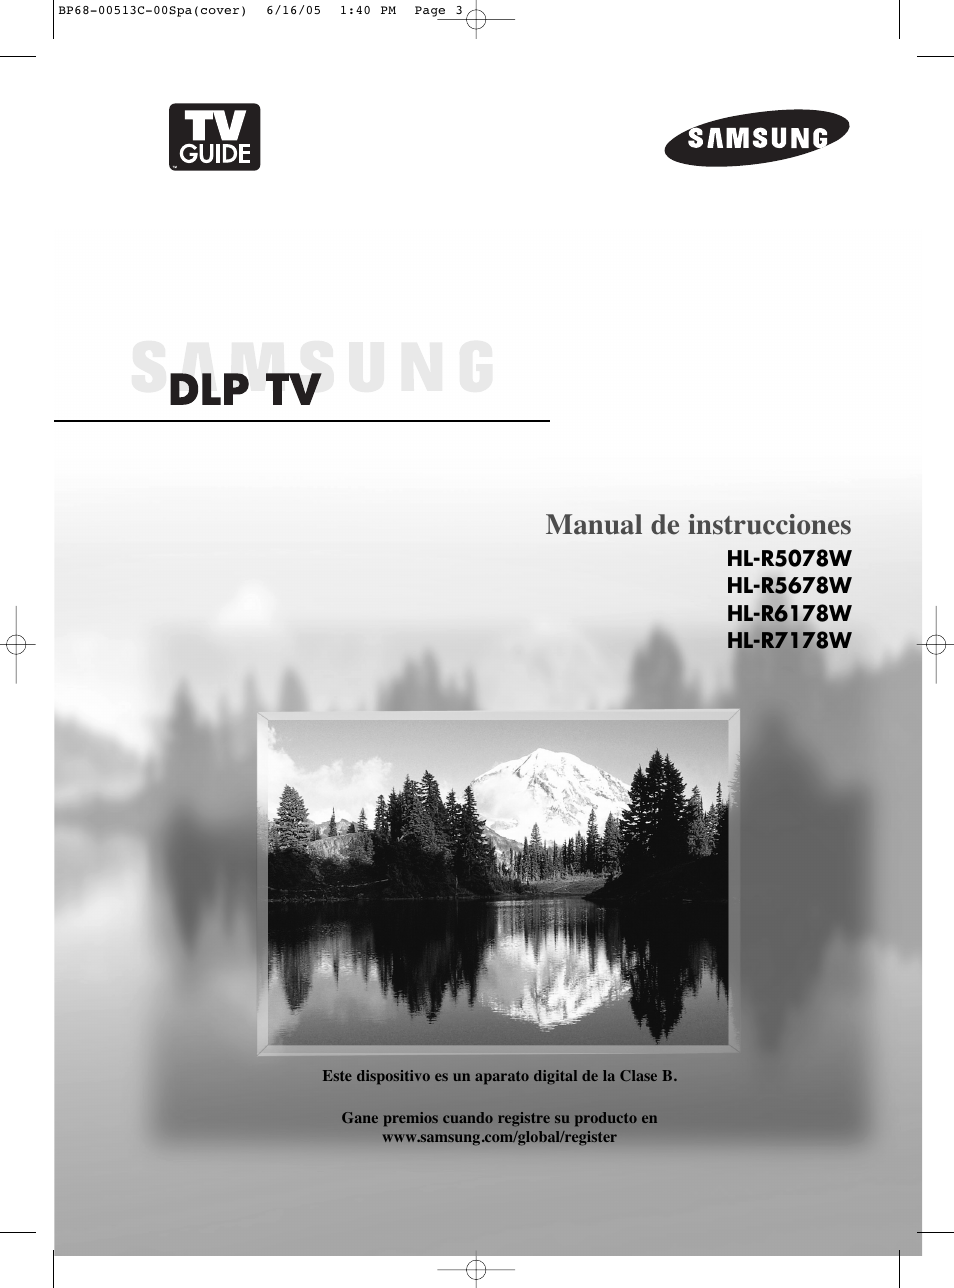 Samsung HL-R5078W Manual del usuario | Páginas: 144